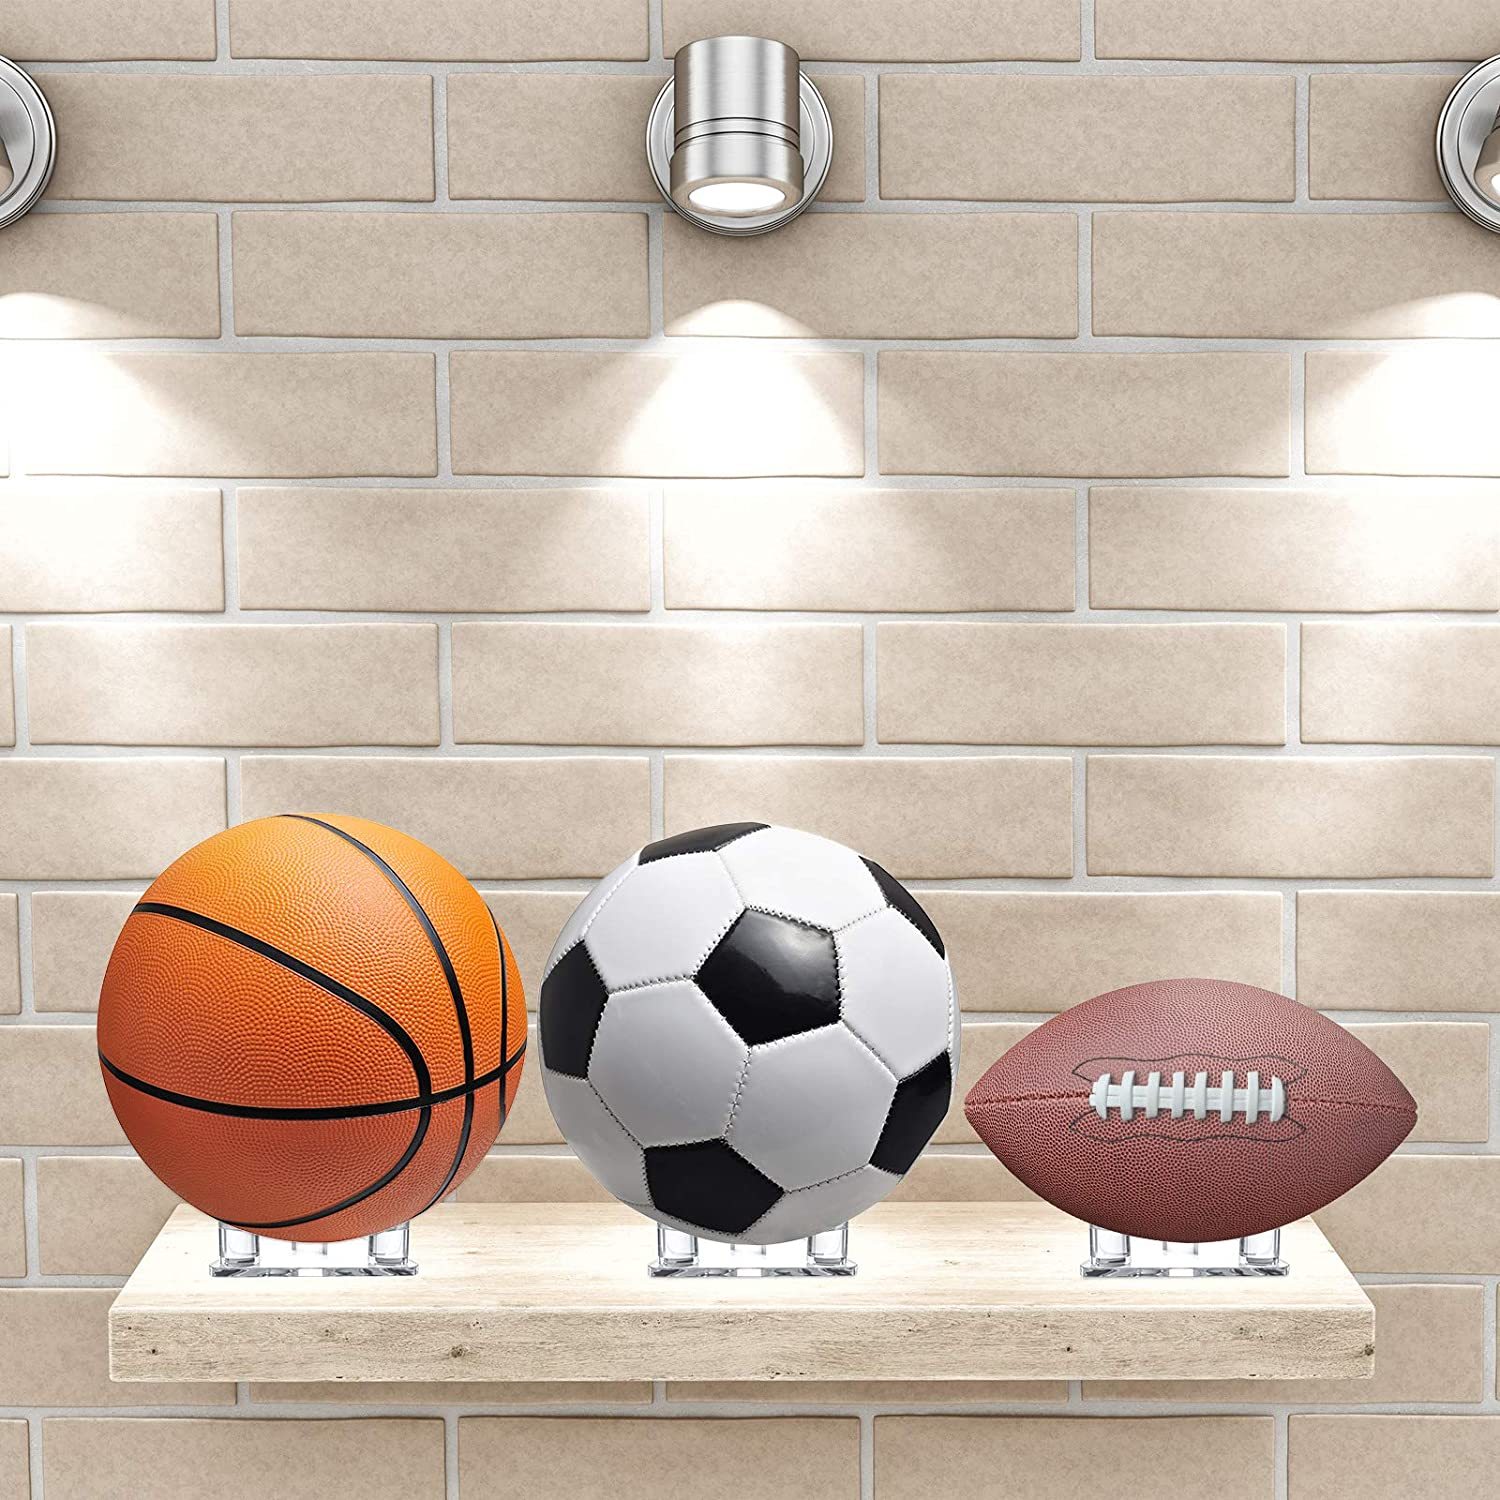 足球 篮球 棒球亚克力展示架 置物架 厂家定制